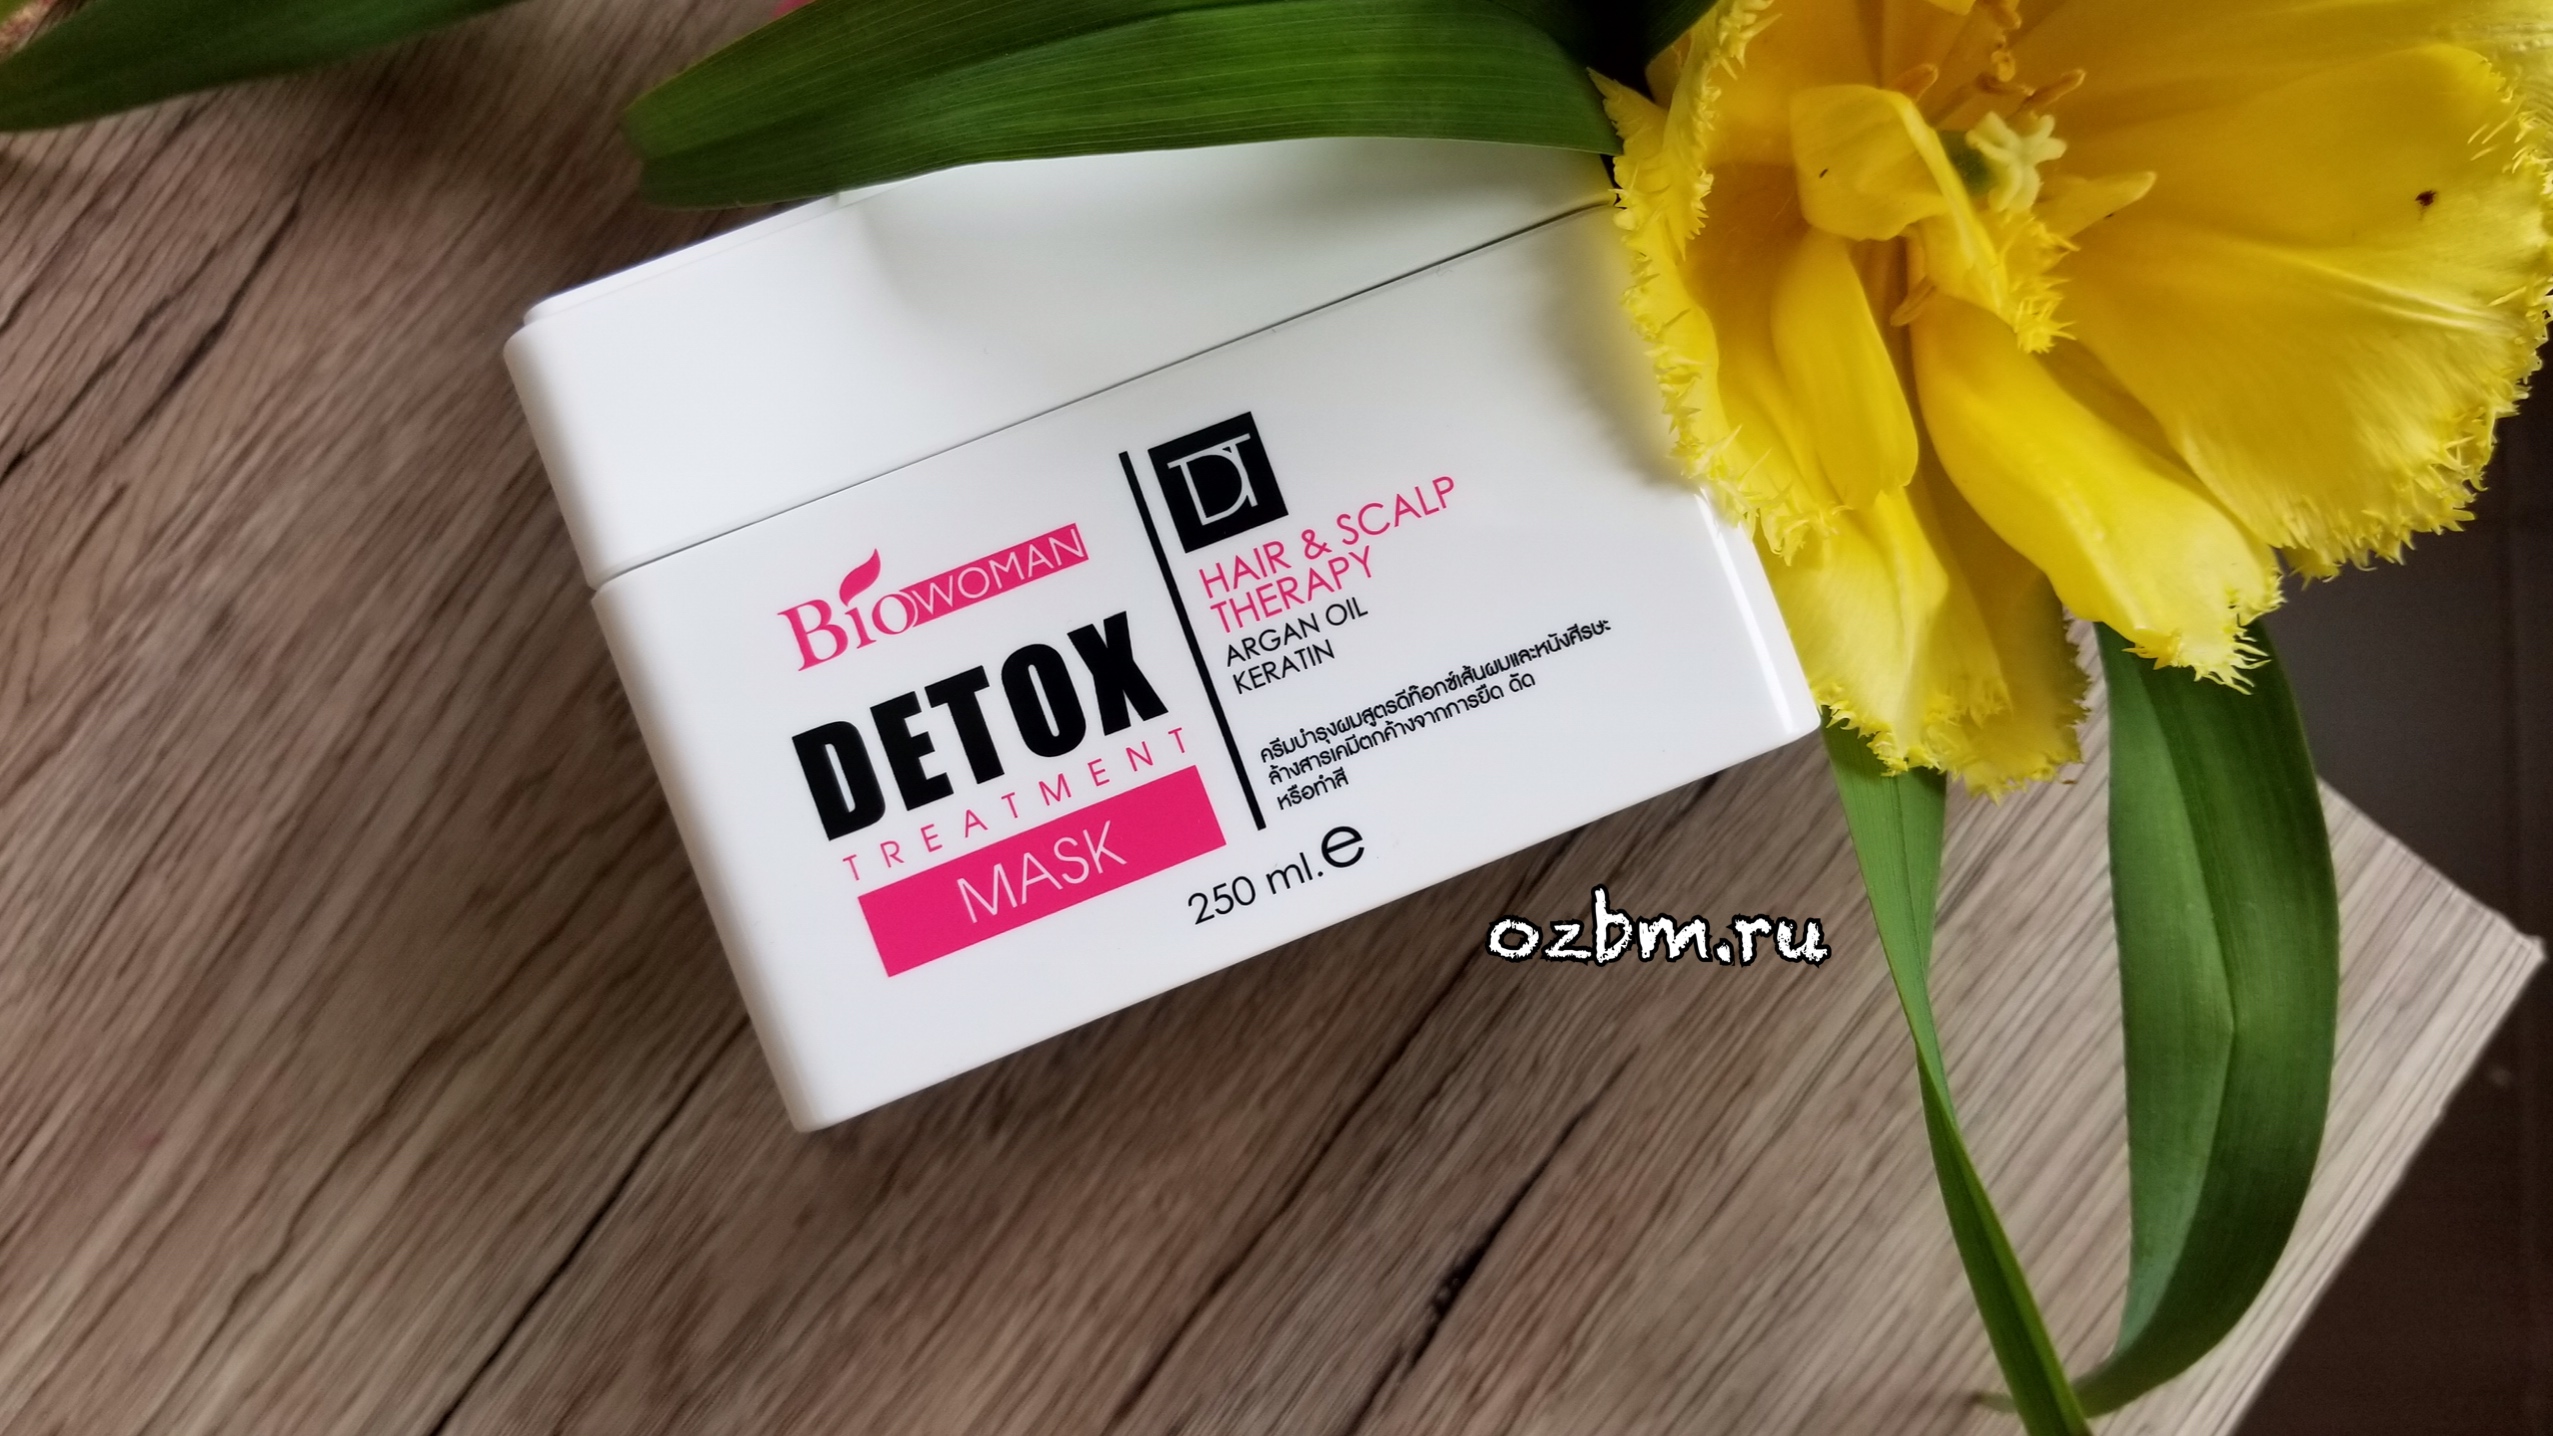 Маска для волос Bio-Woman Detox Treatment Тайская с кератином, углем бамбука и маслом арганы - отзыв